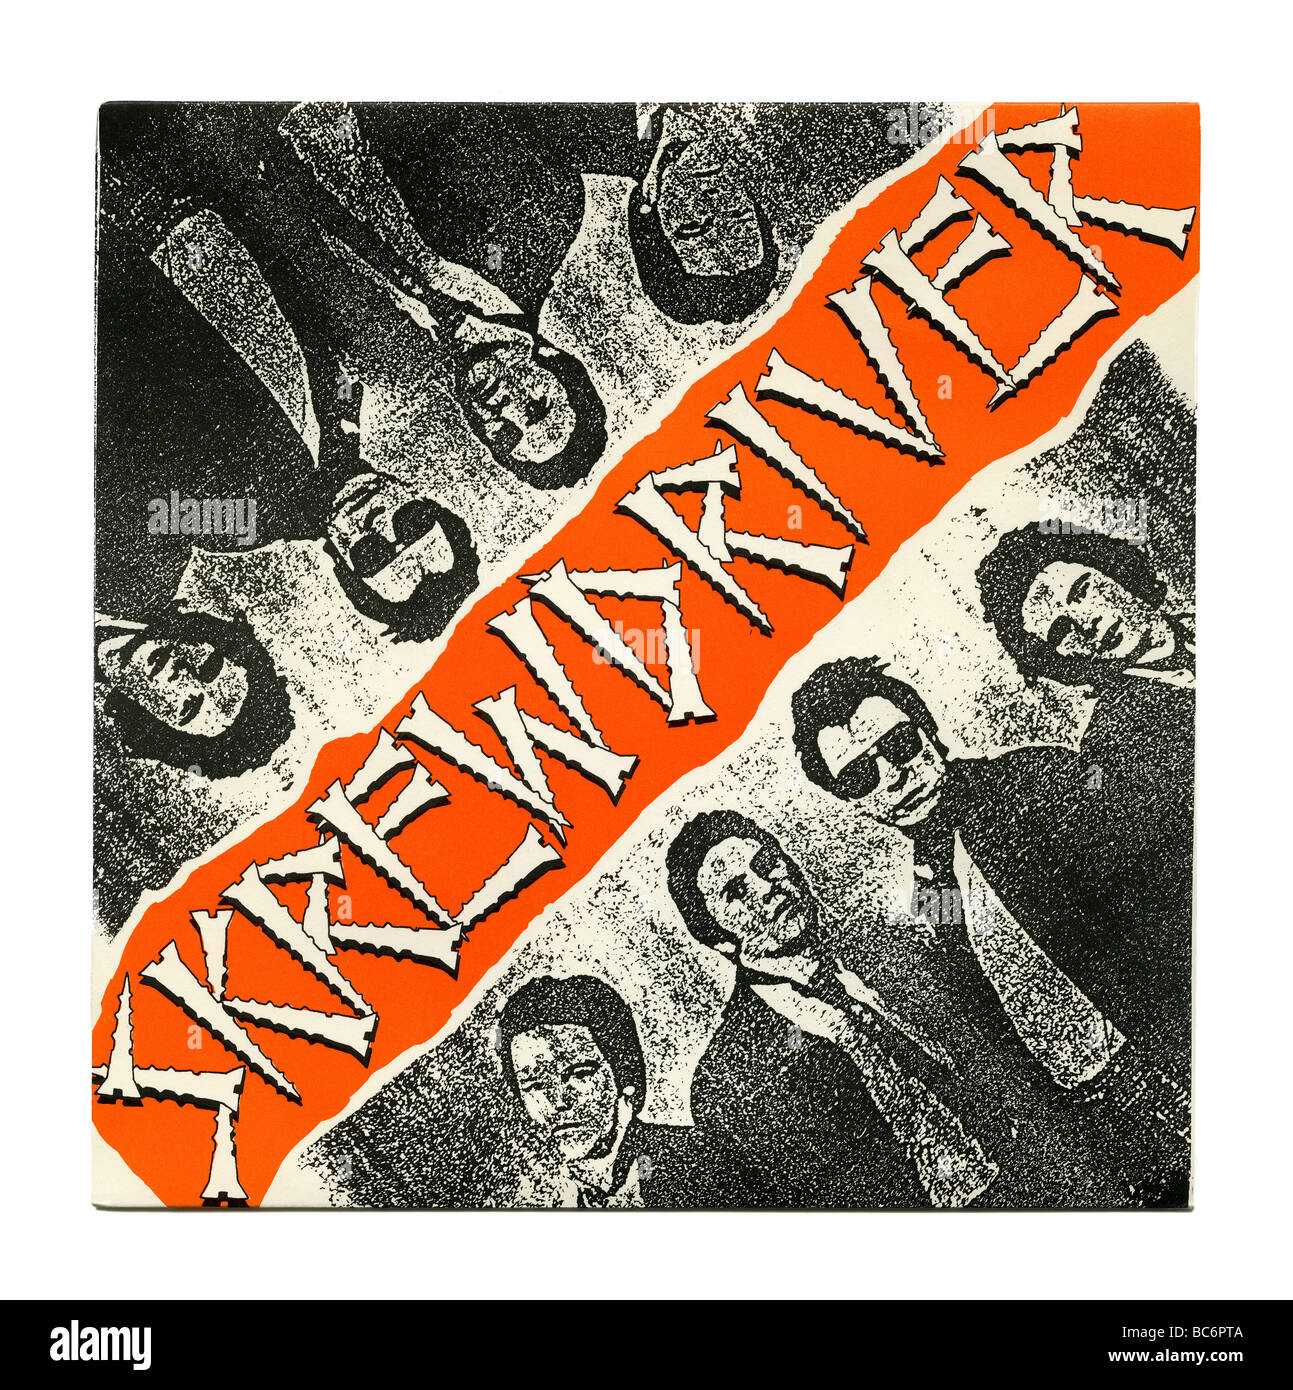 "Tu sei così stupido' singolo da Skrewdriver, un punk rock record rilasciato per la prima volta nel 1977 Foto Stock